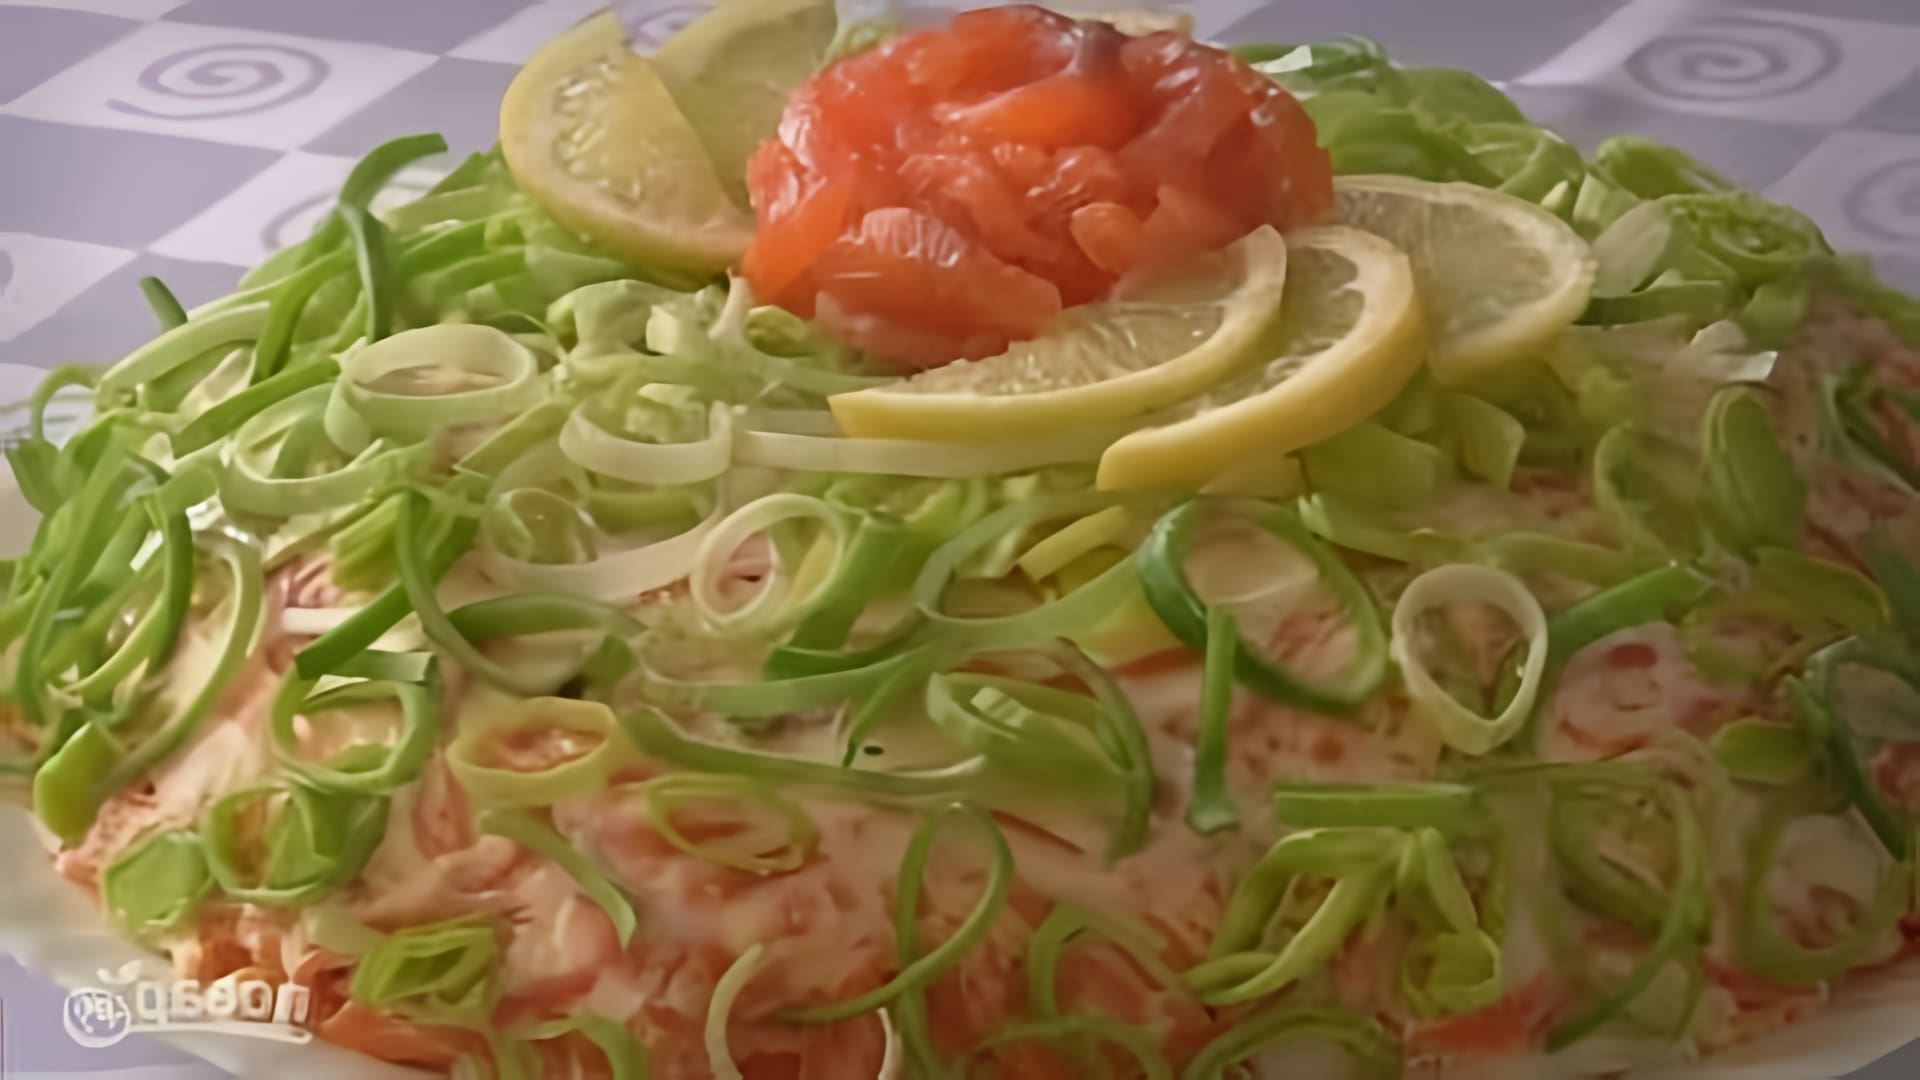 В этом видео демонстрируется рецепт приготовления слоеного салата "Королевская шуба"